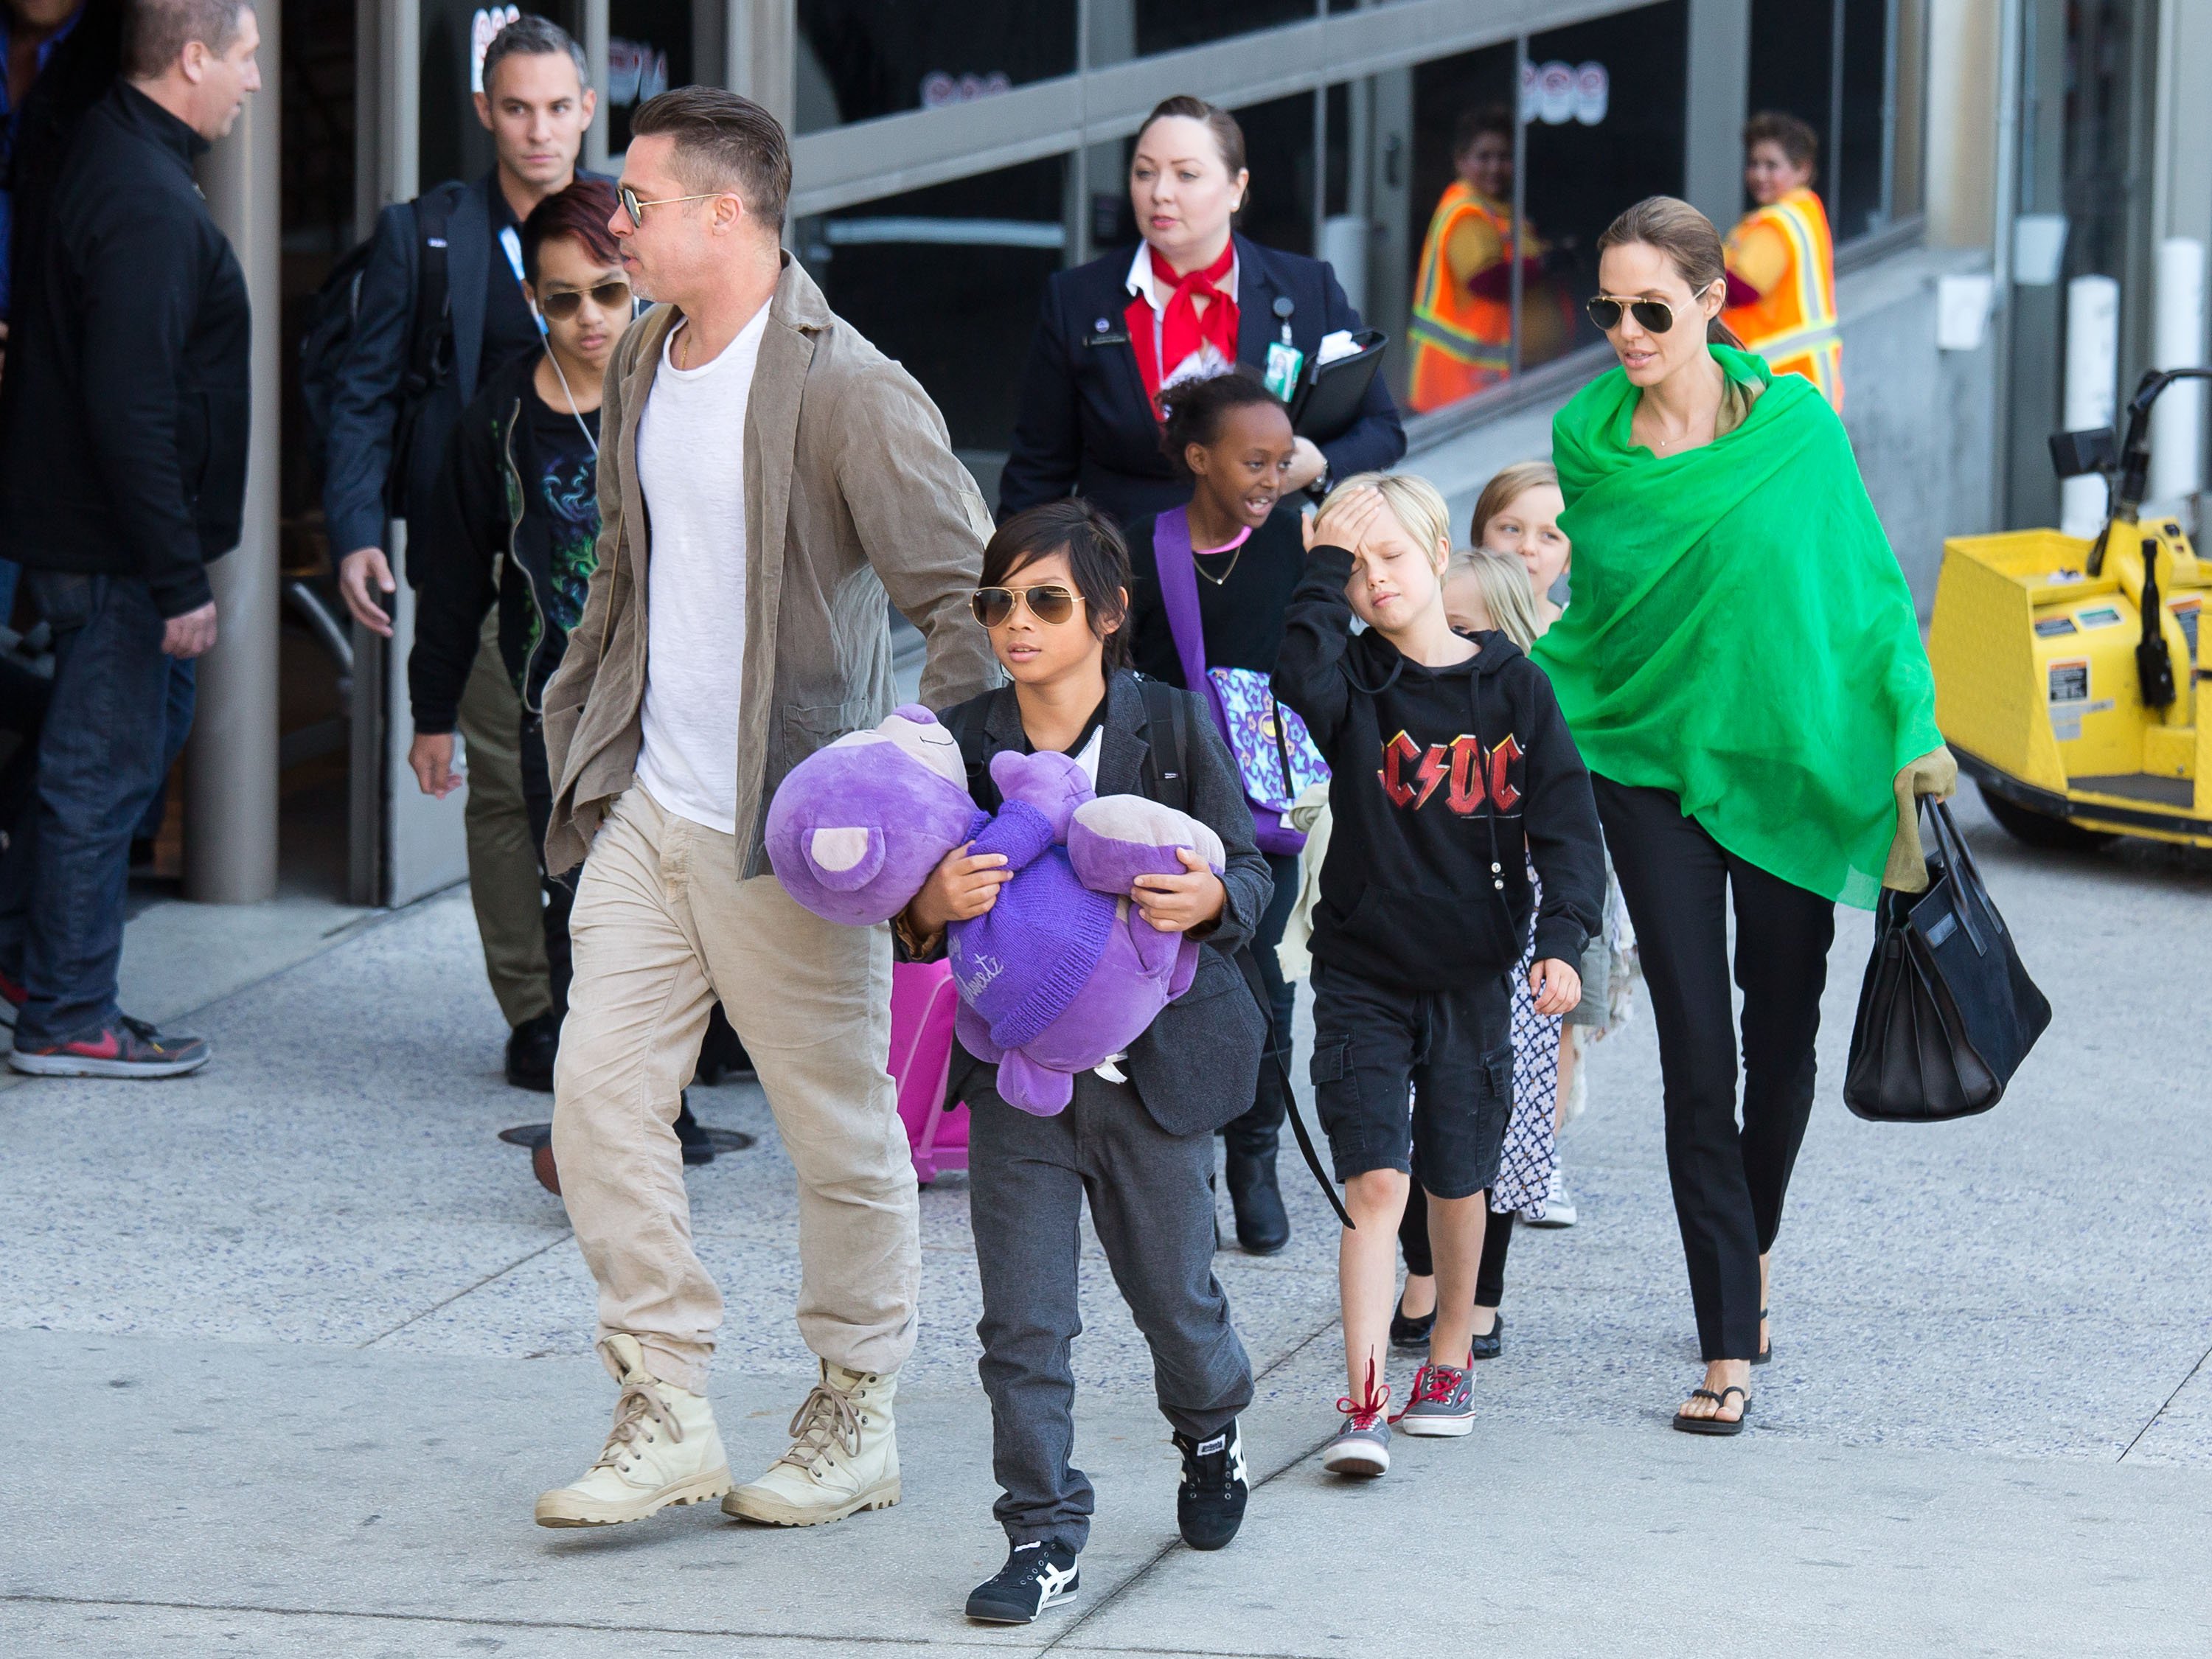 Brad Pitt y Angelina Jolie tras aterrizar en el aeropuerto internacional de Los Ángeles con sus hijos, Pax, Maddox, Shiloh, Zahara, Vivienne y Knox Jolie-Pitt el 5 de febrero de 2014, en California. | Foto: Getty Images